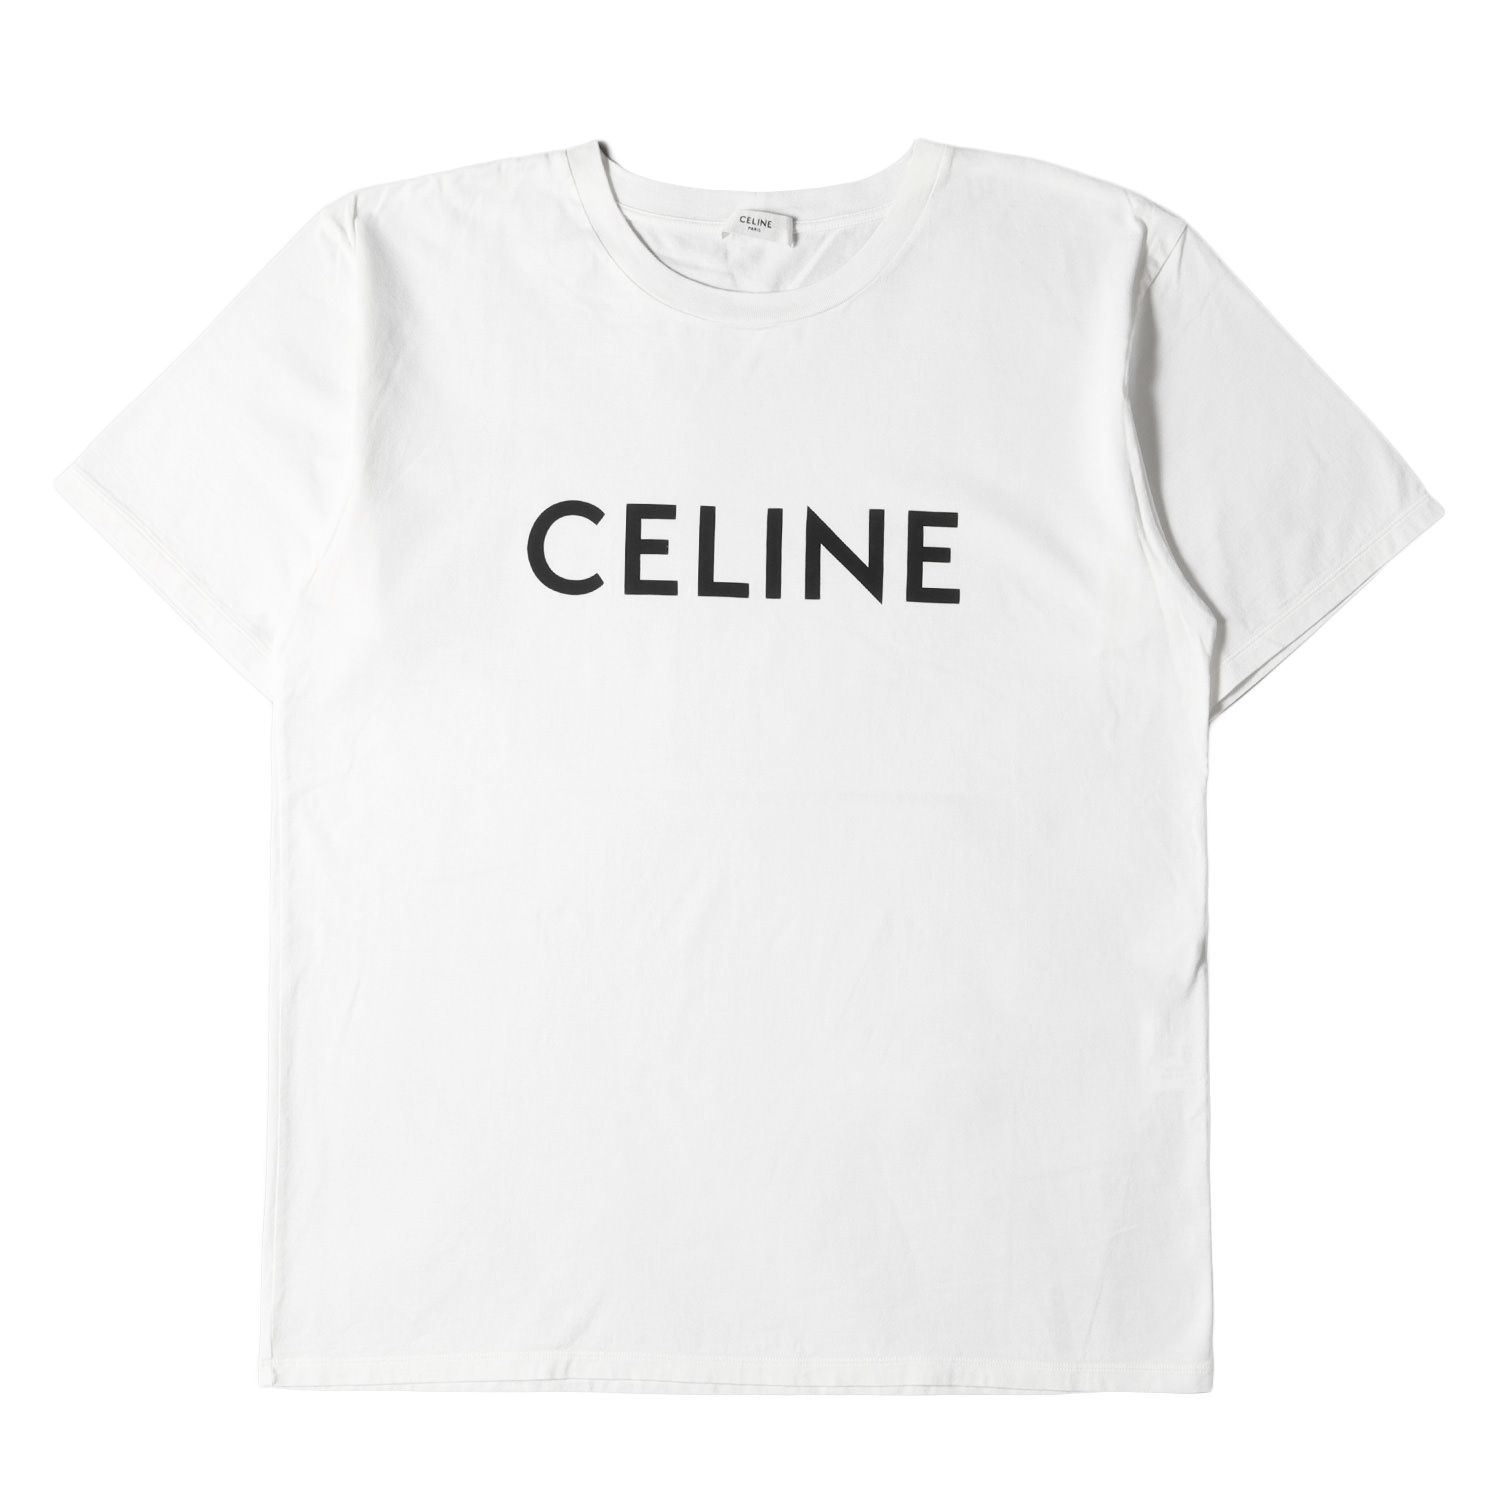 CELINE セリーヌ Tシャツ サイズ:L ロゴ プリント コットンジャージ